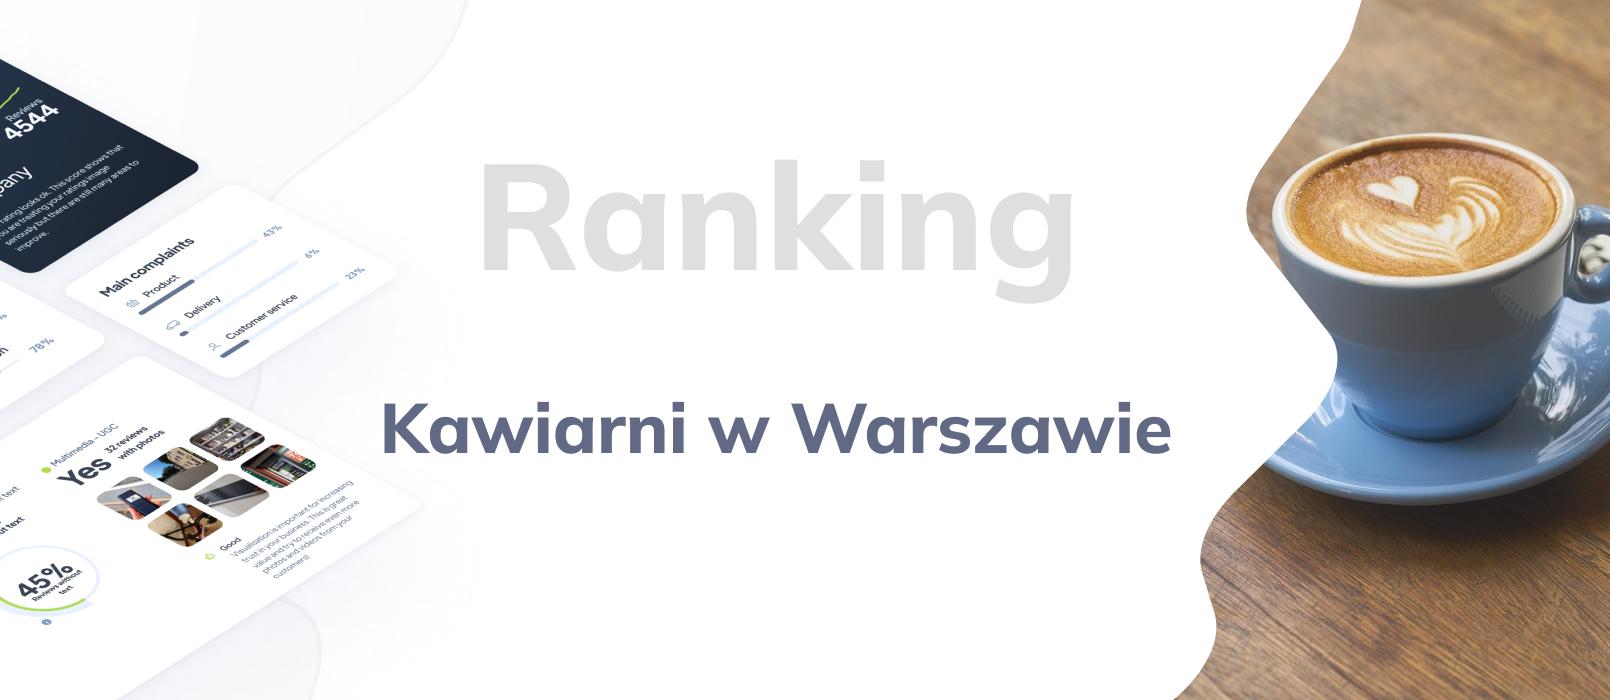 Kawiarnie w Warszawie - ranking TOP 10